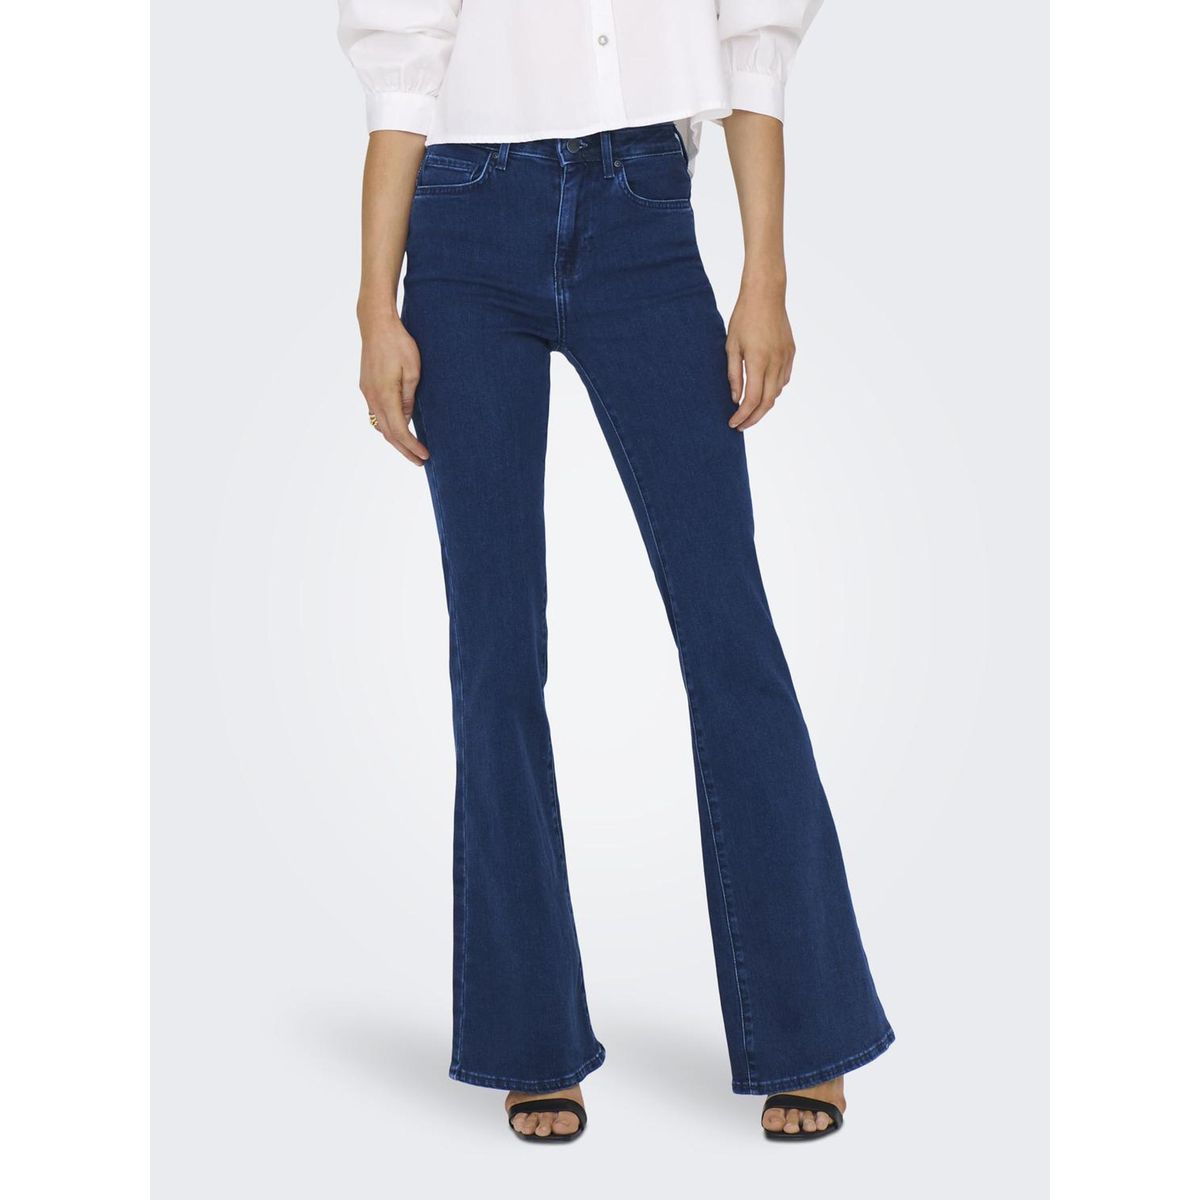 Jeans pour femme taille haute pantalon en jean de loisirs jambes larges  vêtements en jean pantalon droit ample (couleur : bleu foncé, taille : XS)